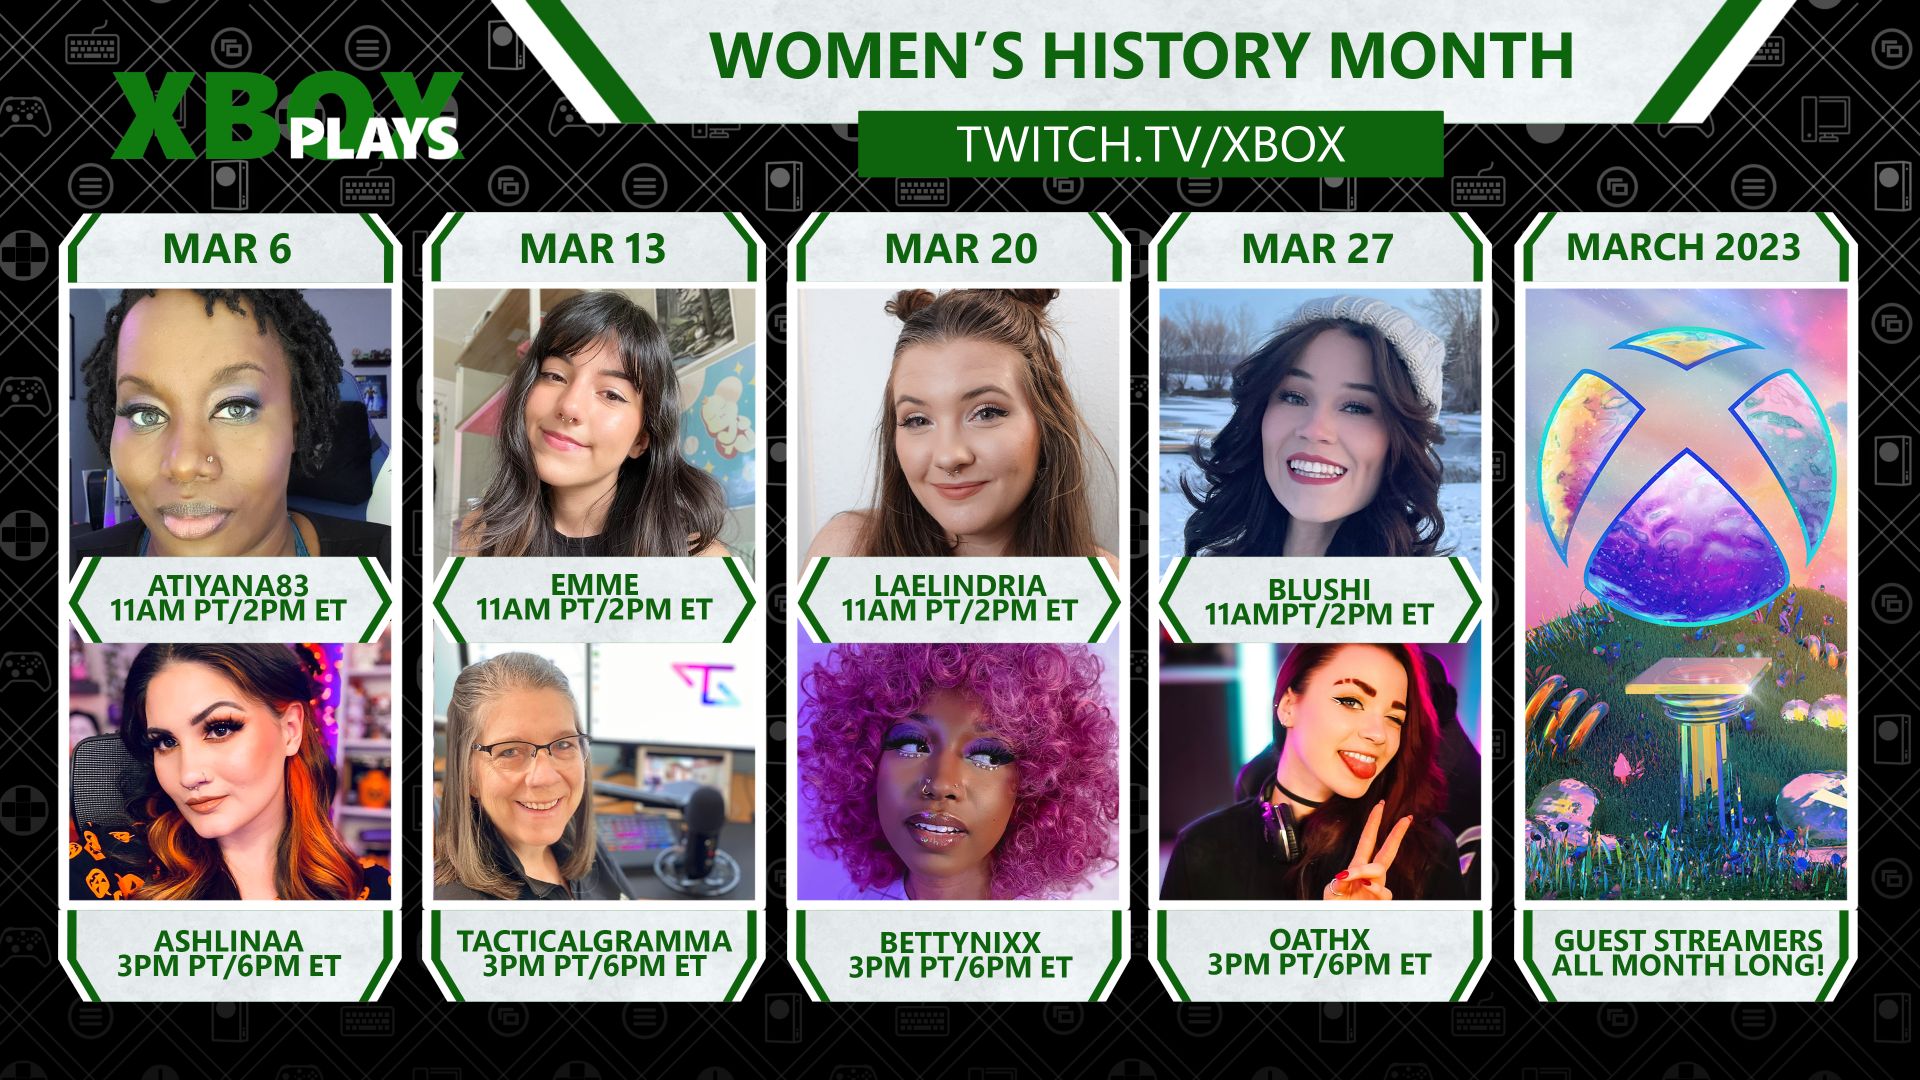 صورة مجمعة تضم ثماني لاعبات على Xbox Plays لشهر تاريخ المرأة في twitch.tv/xbox.